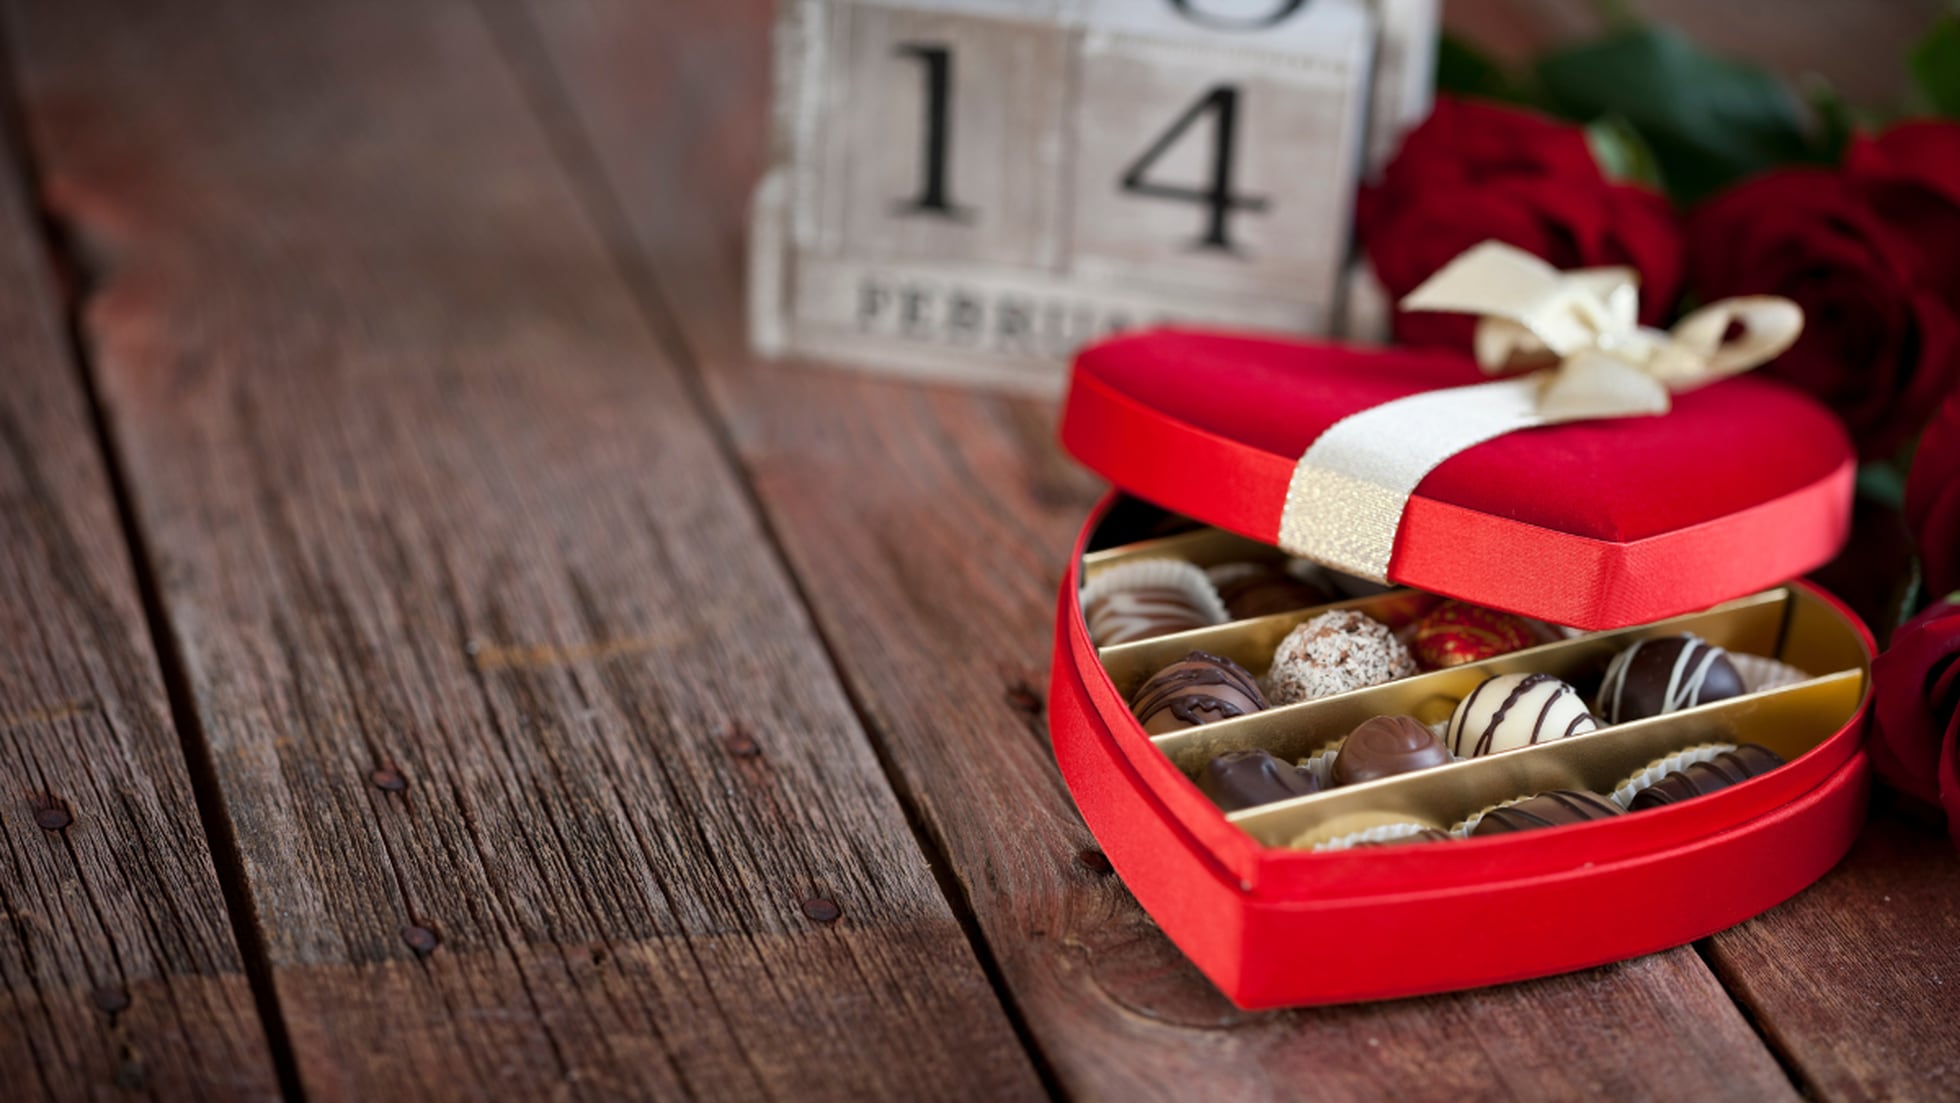 Siete regalos personalizados para sorprender a tu pareja en San Valentín, Escaparate: compras y ofertas